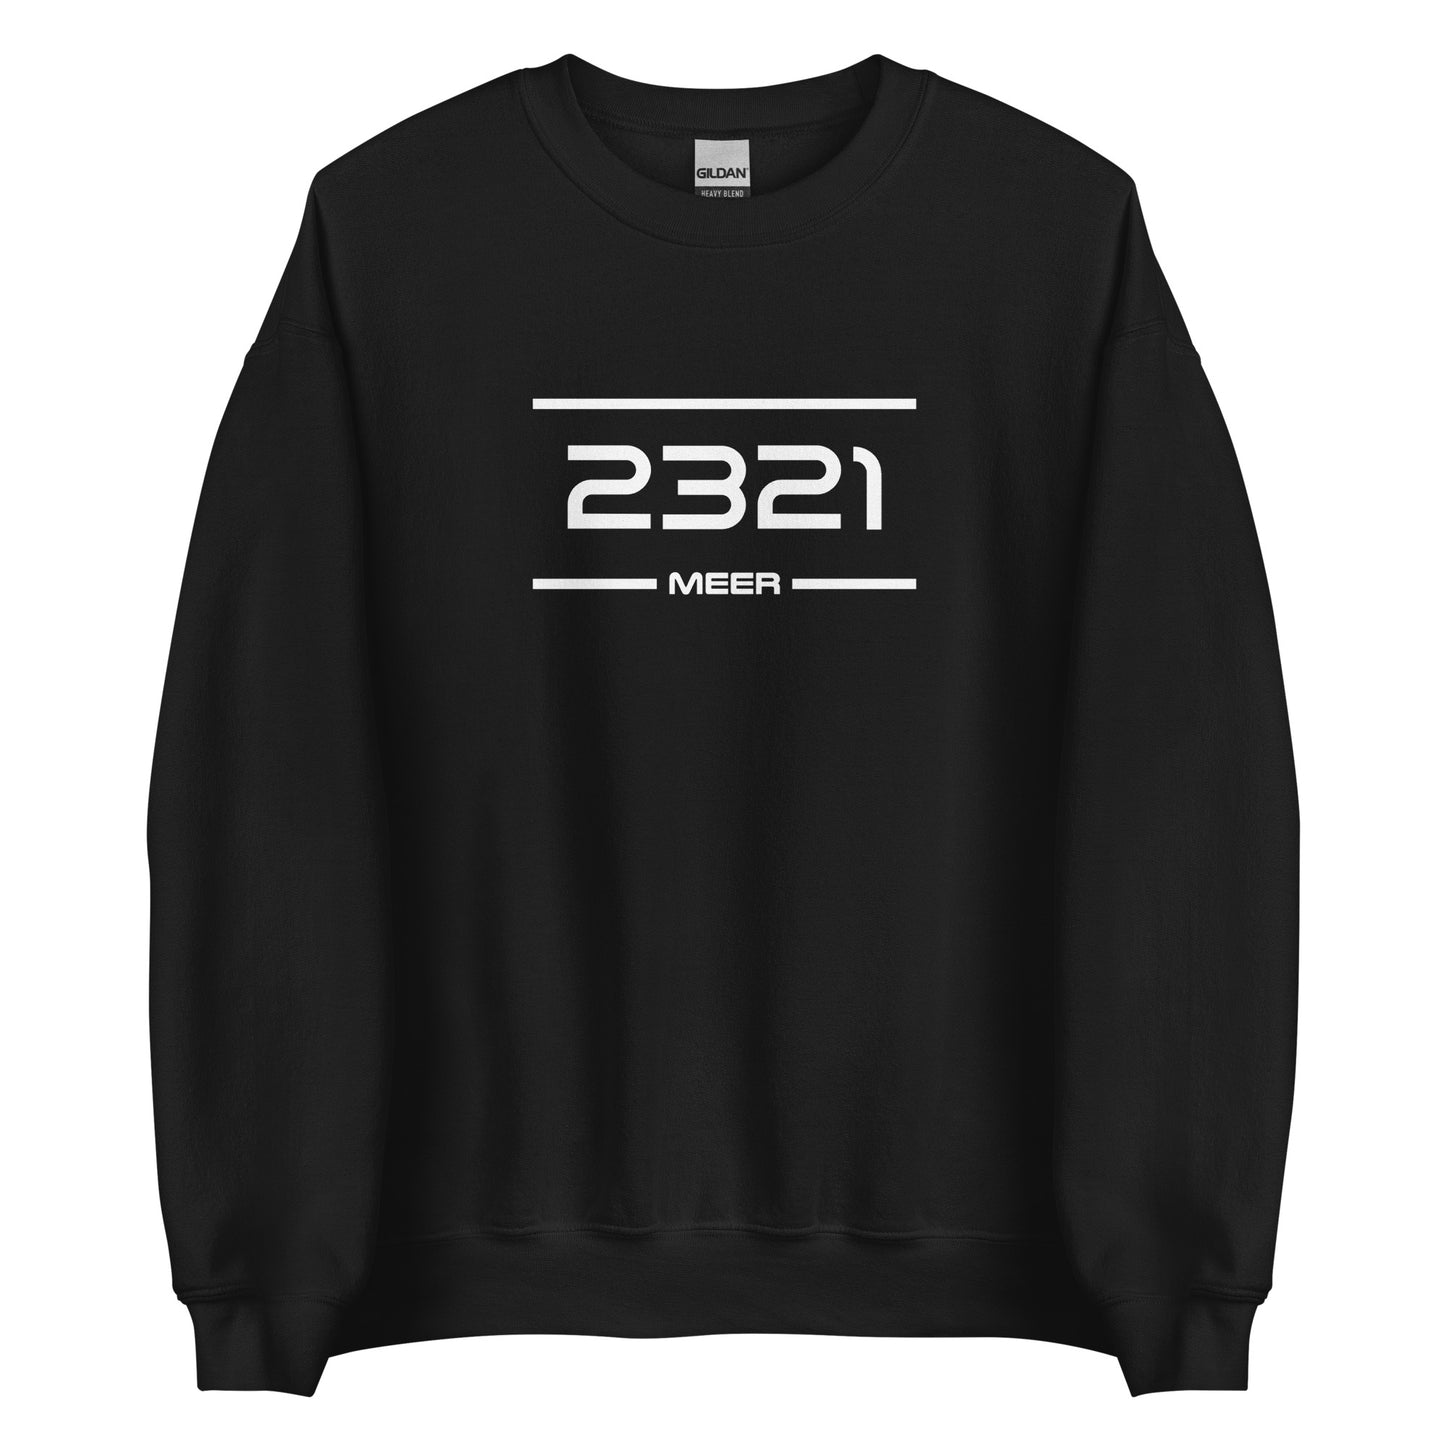 Sweater - 2321 - Meer (M/V)